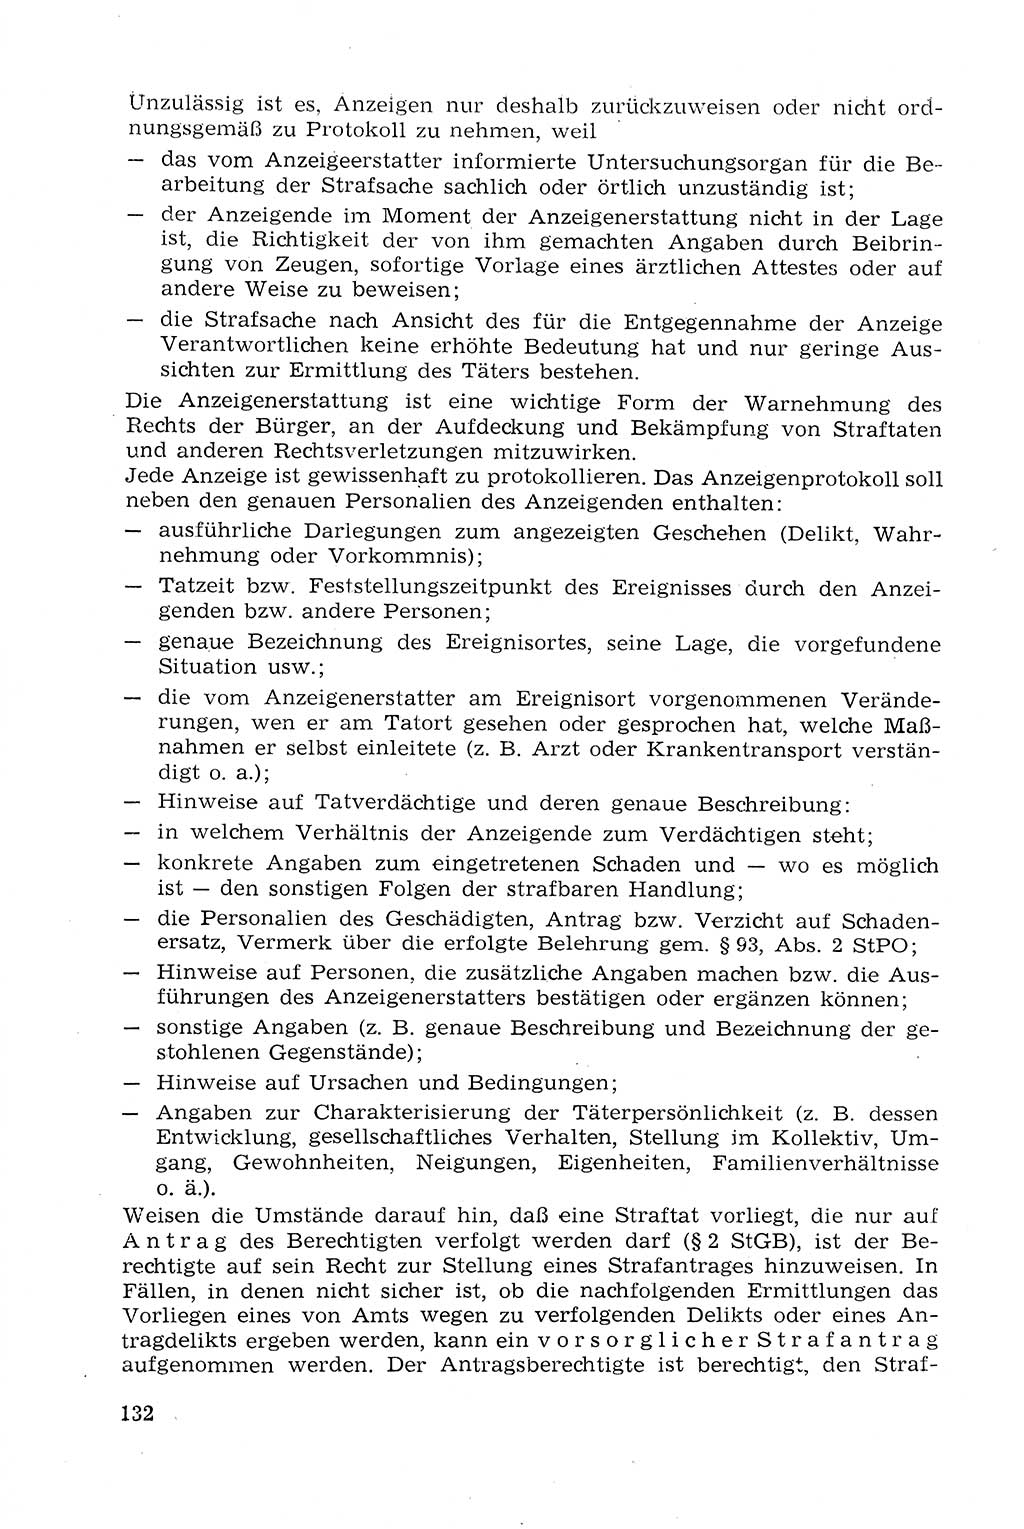 Strafprozeßrecht der DDR (Deutsche Demokratische Republik), Lehrmaterial 1969, Seite 132 (Strafprozeßr. DDR Lehrmat. 1969, S. 132)